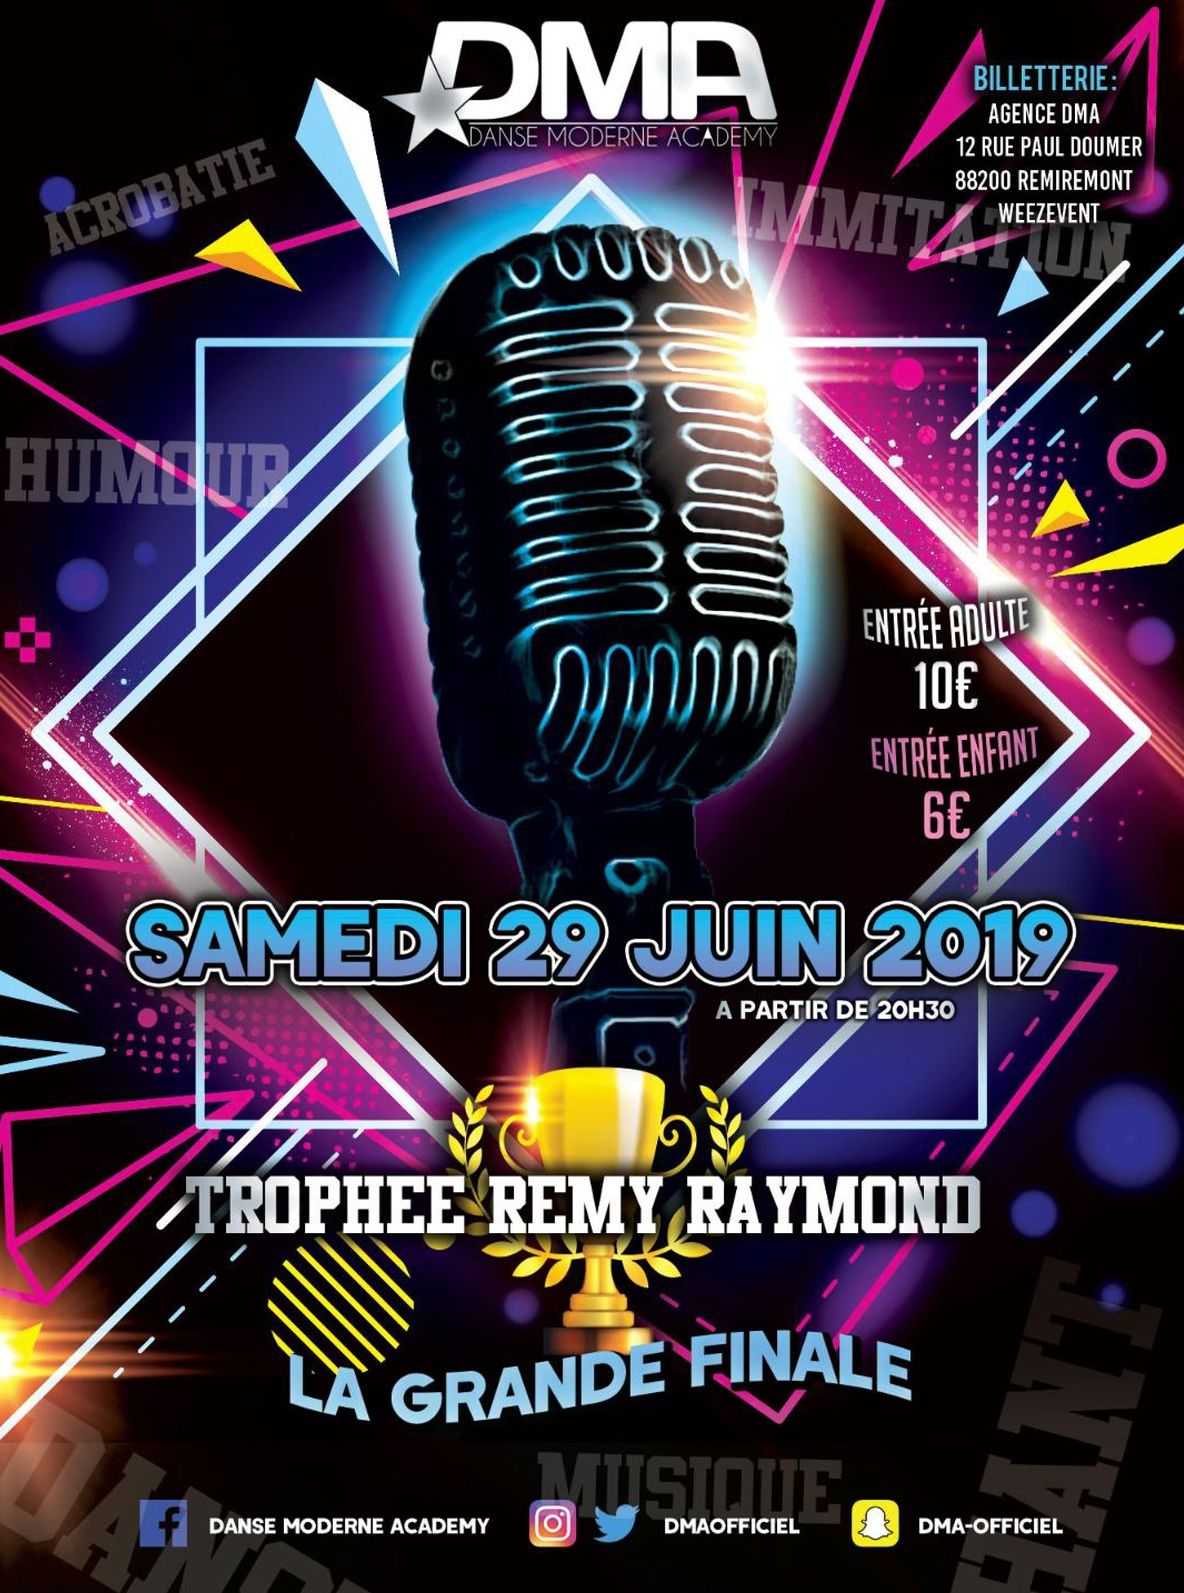 Remiremont : finale du trophée Jeunes Talents ce samedi 29 juin